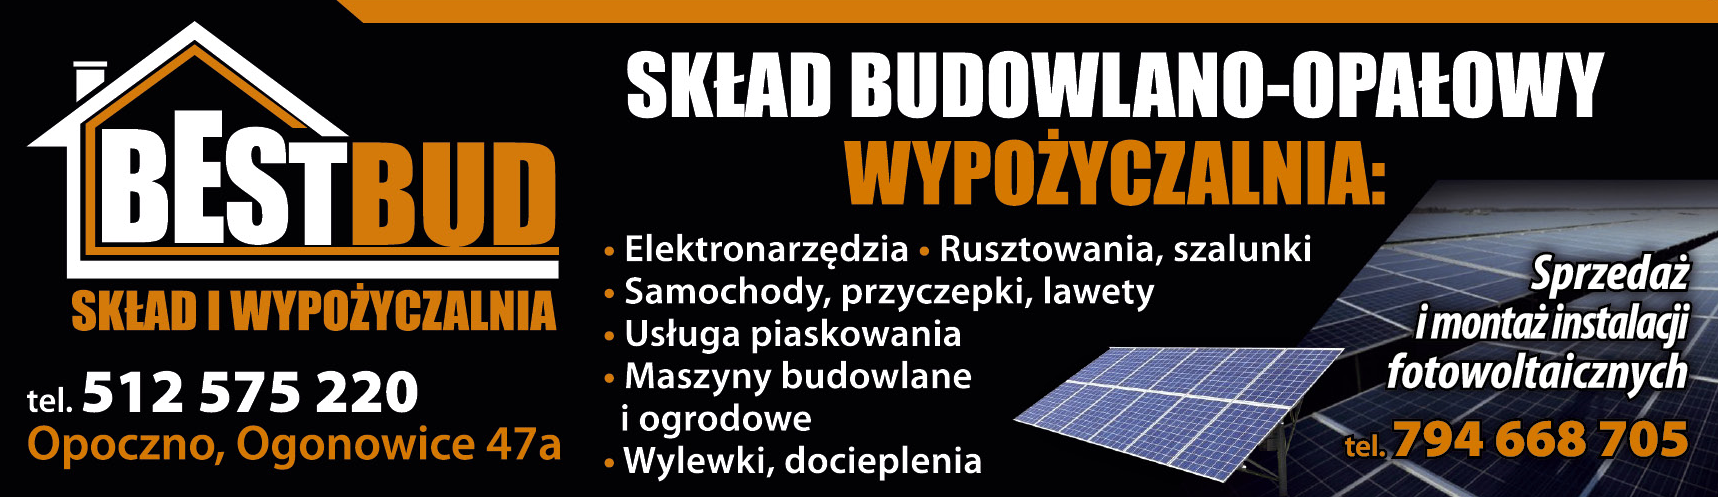 BEST BUD Opoczno Skład Budowlano-Opałowy / Wypożyczalnia Rusztowań, Maszyn Budowlanych i Ogrodowych